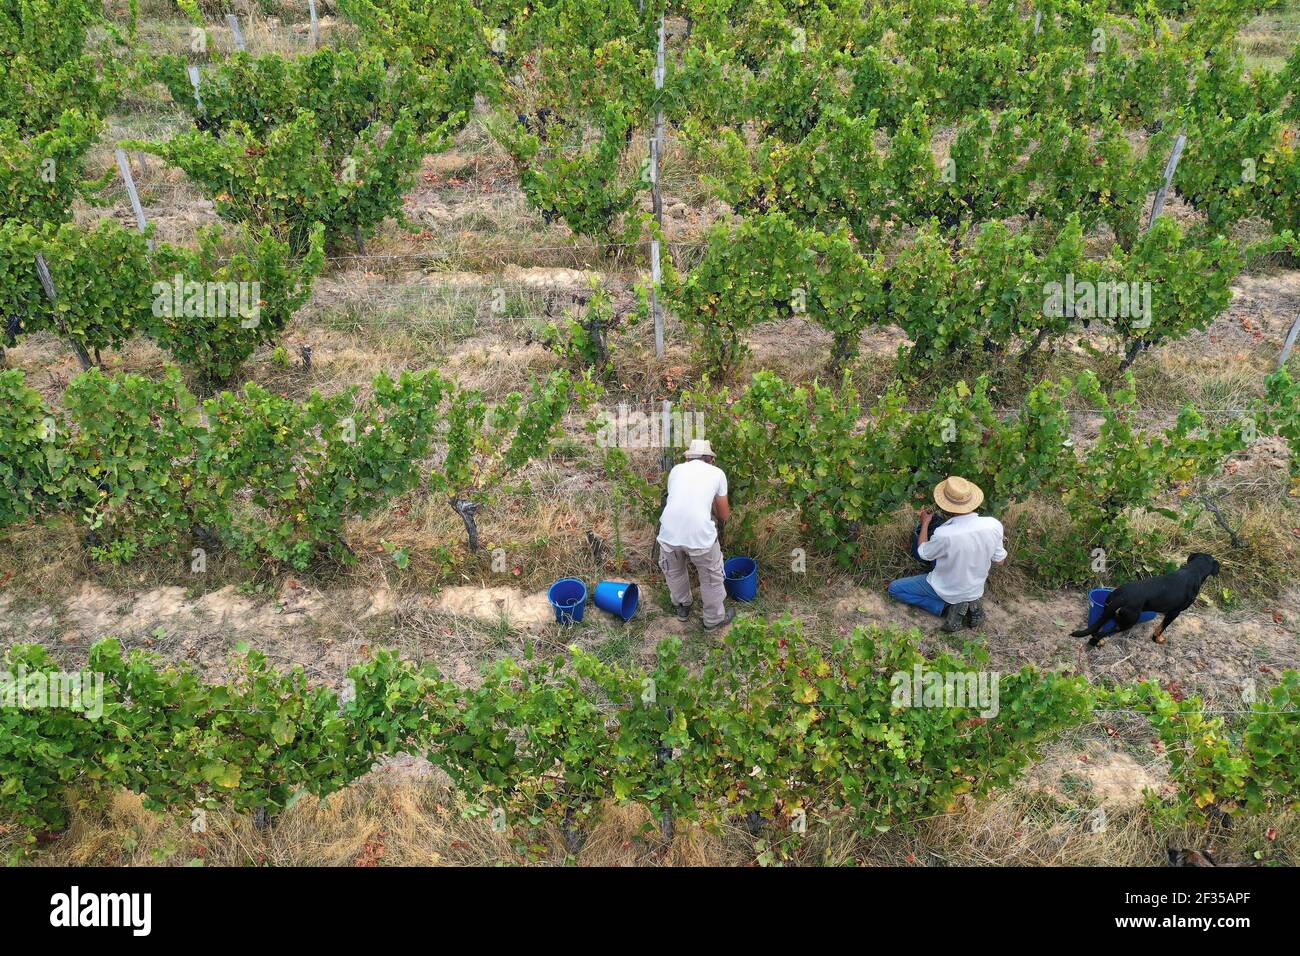 Cueillette à la main : vue aérienne d'un vignoble pendant la récolte manuelle. Deux hommes et un chien parmi les vignes Banque D'Images